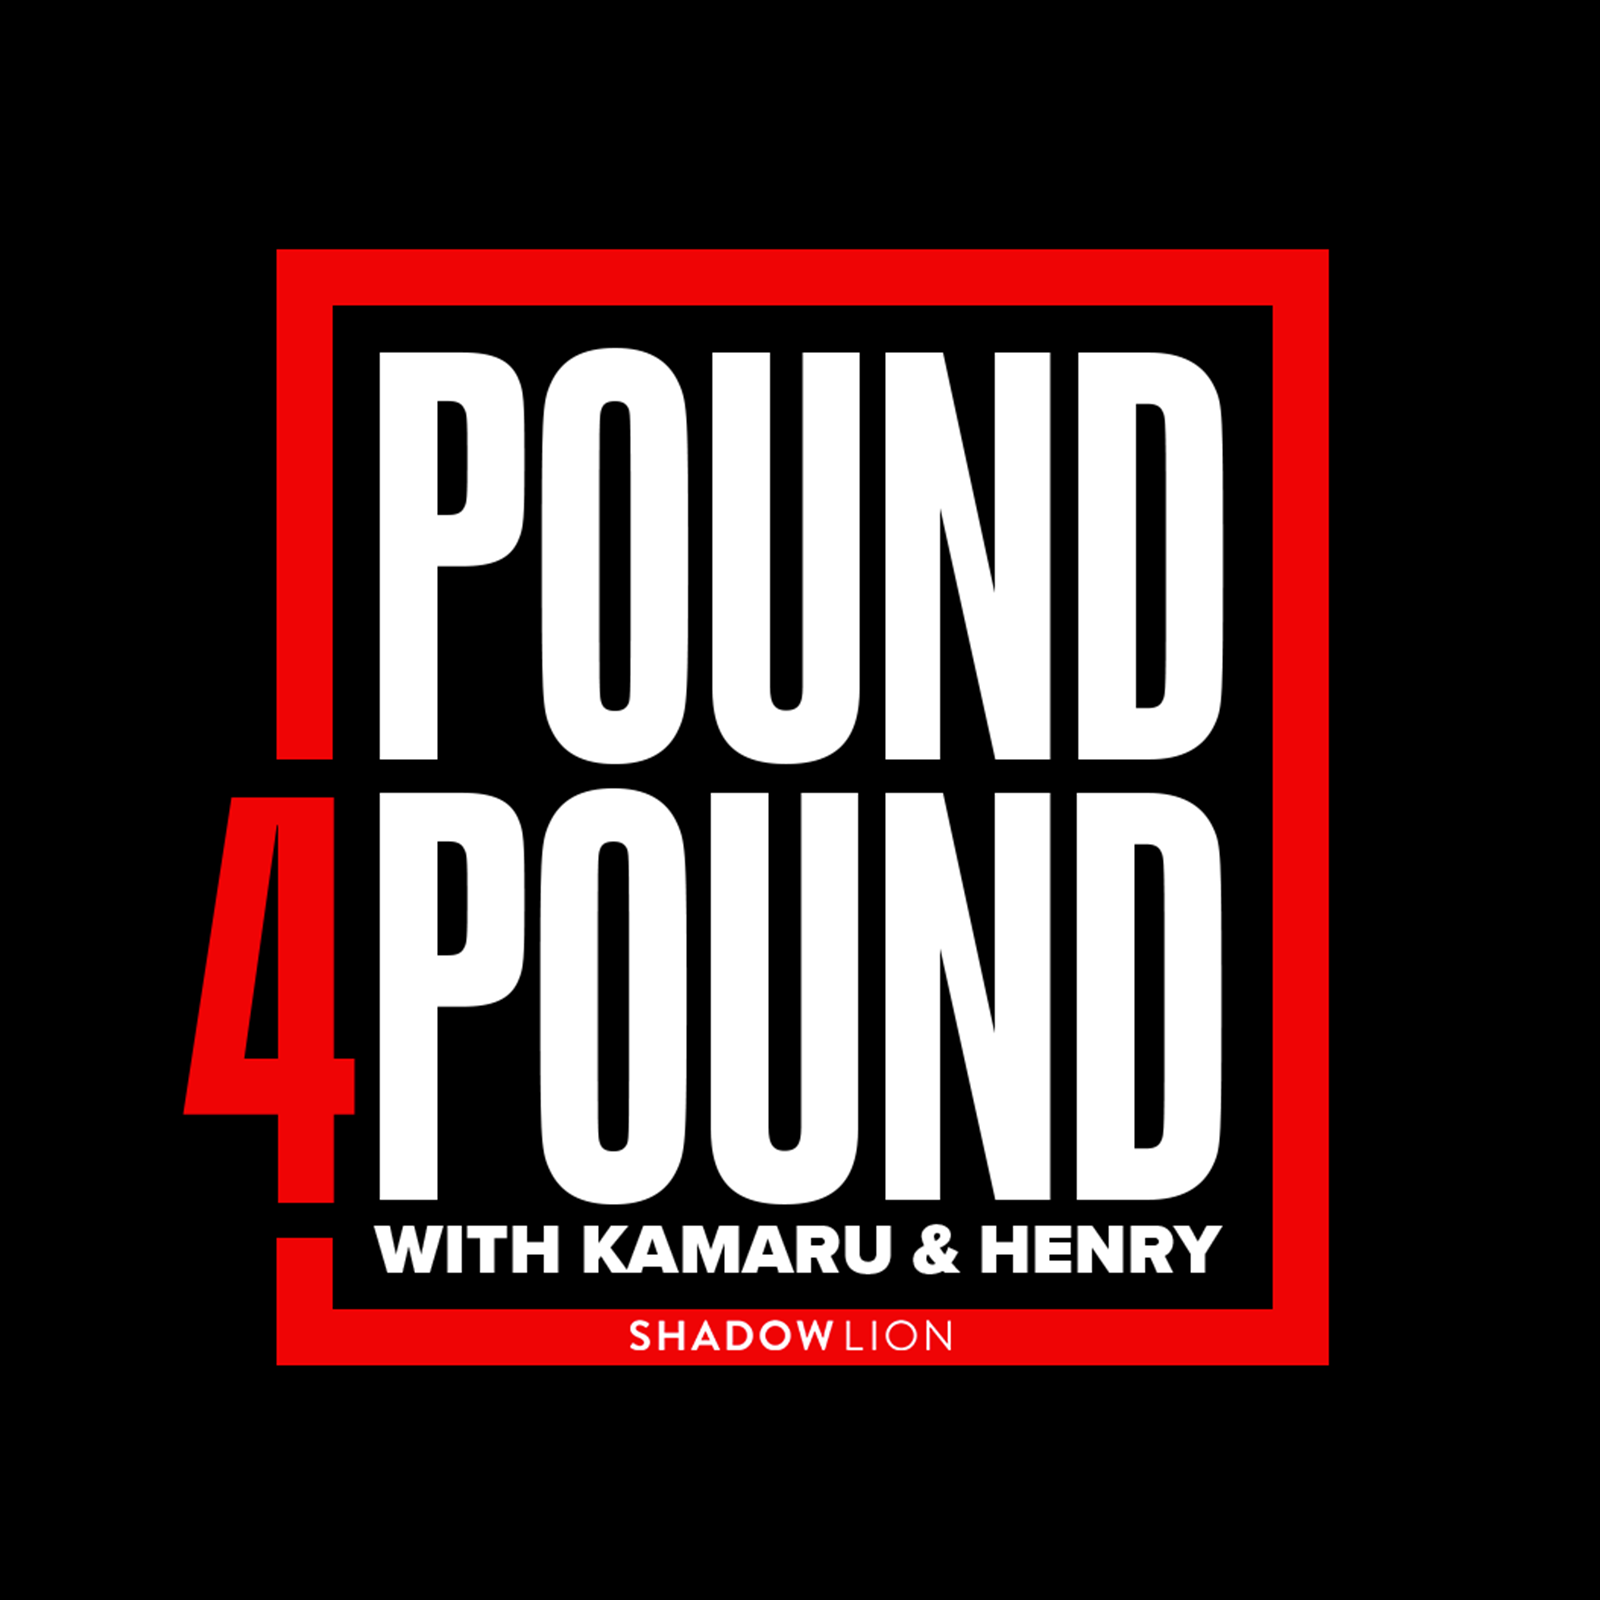 BONUS EPISODE: Kamaru Usman & Henry Cejudo Make Their UFC 299 Picks LIVE from Miami